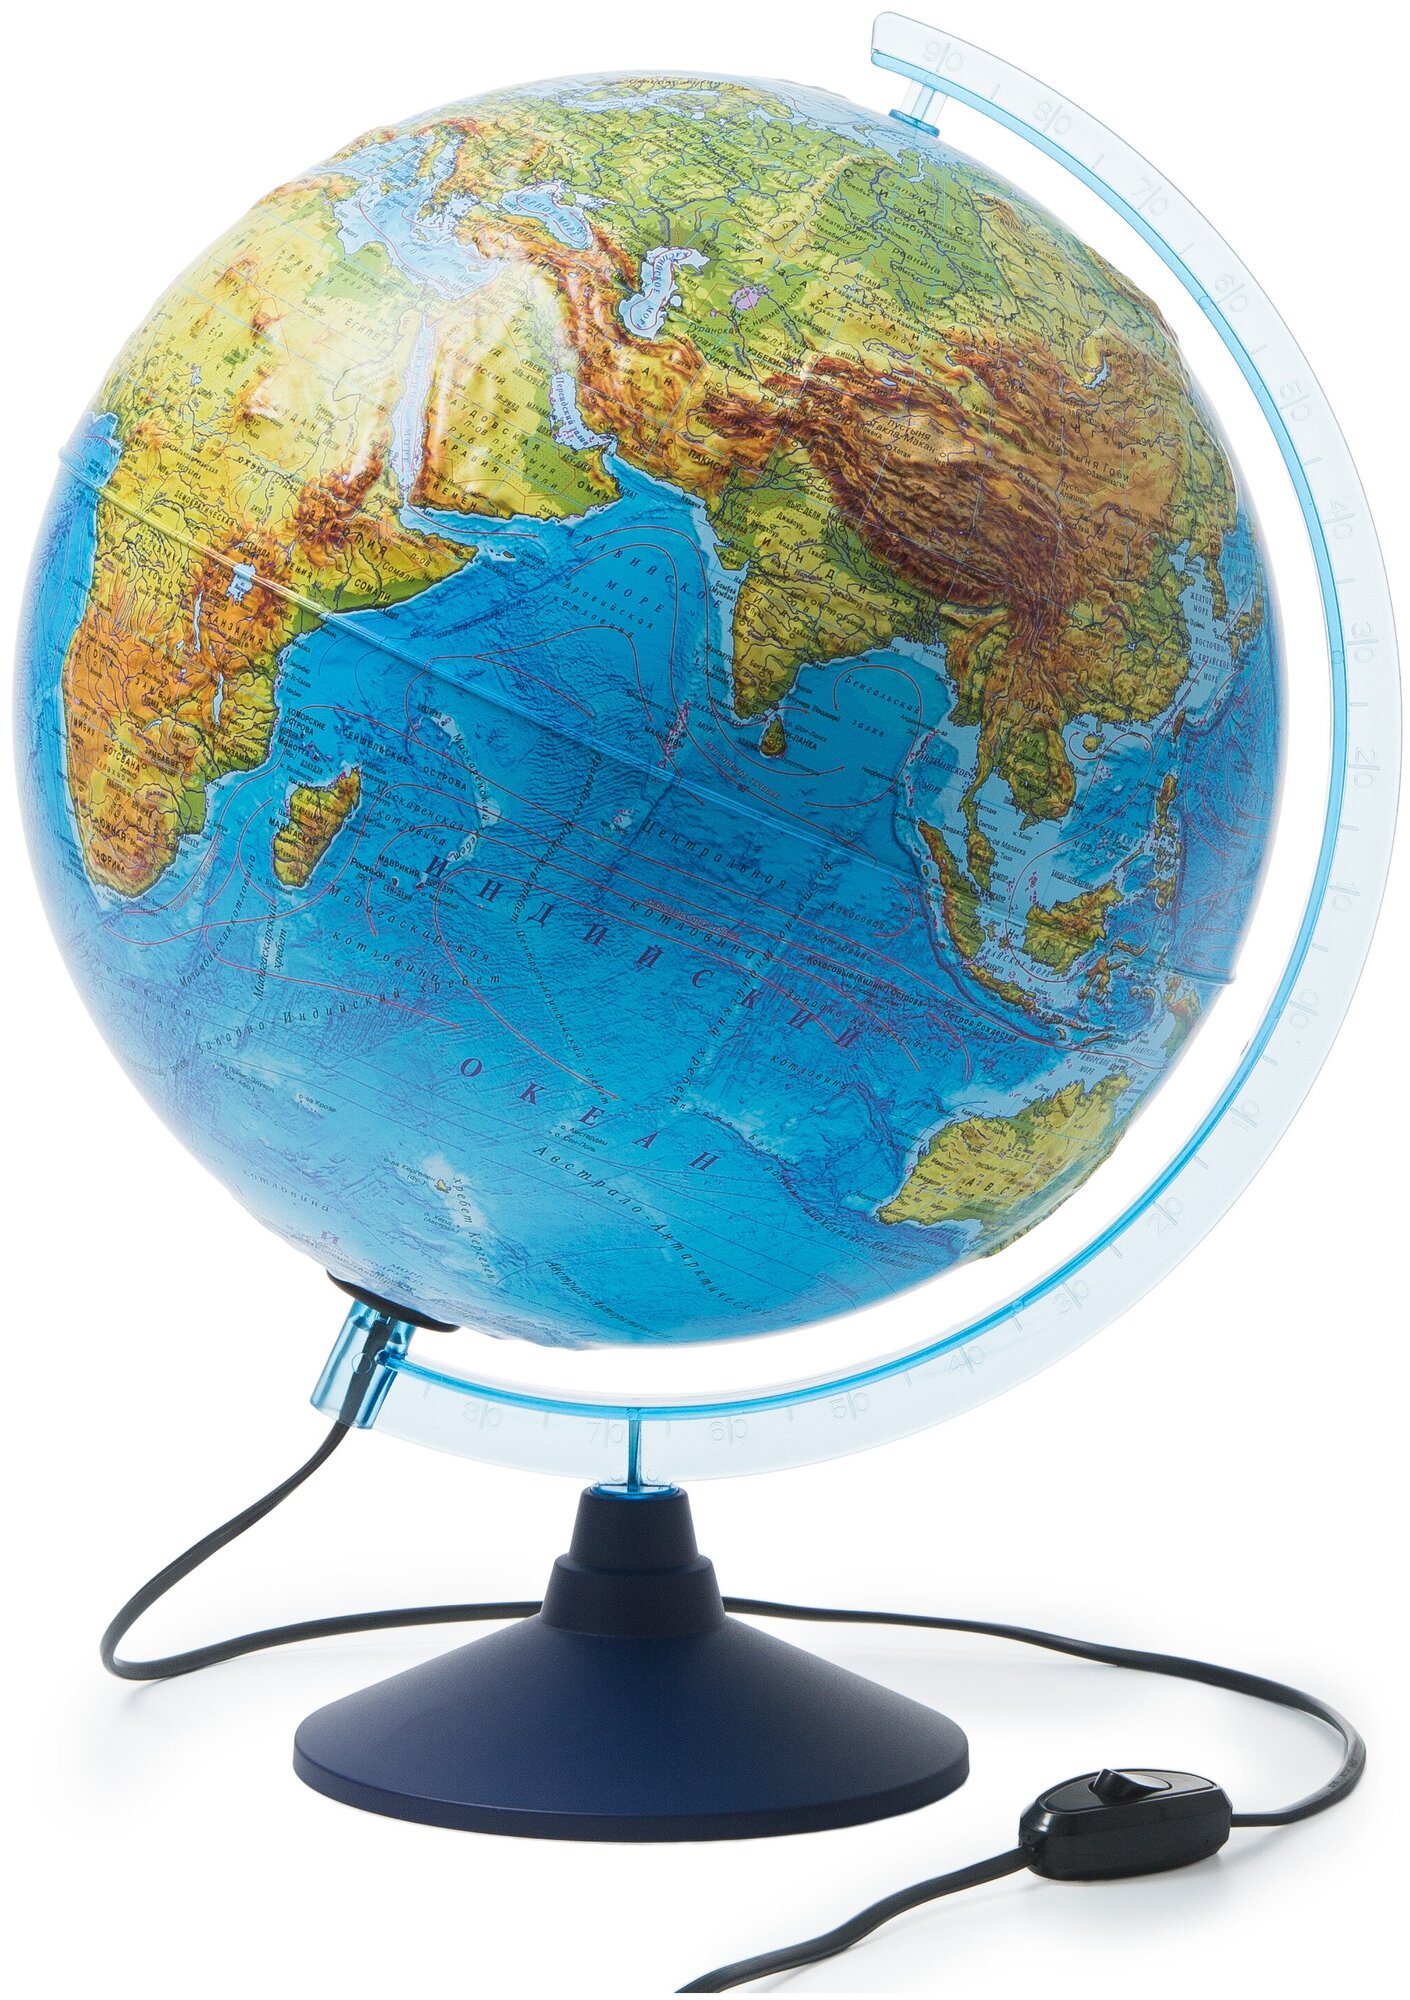 Глобен Глобус D32 физико-политический рельефный с подсветкой (двойная карта) Классик Евро Ке013200233 — купить в интернет-магазине по низкой цене на Яндекс Маркете